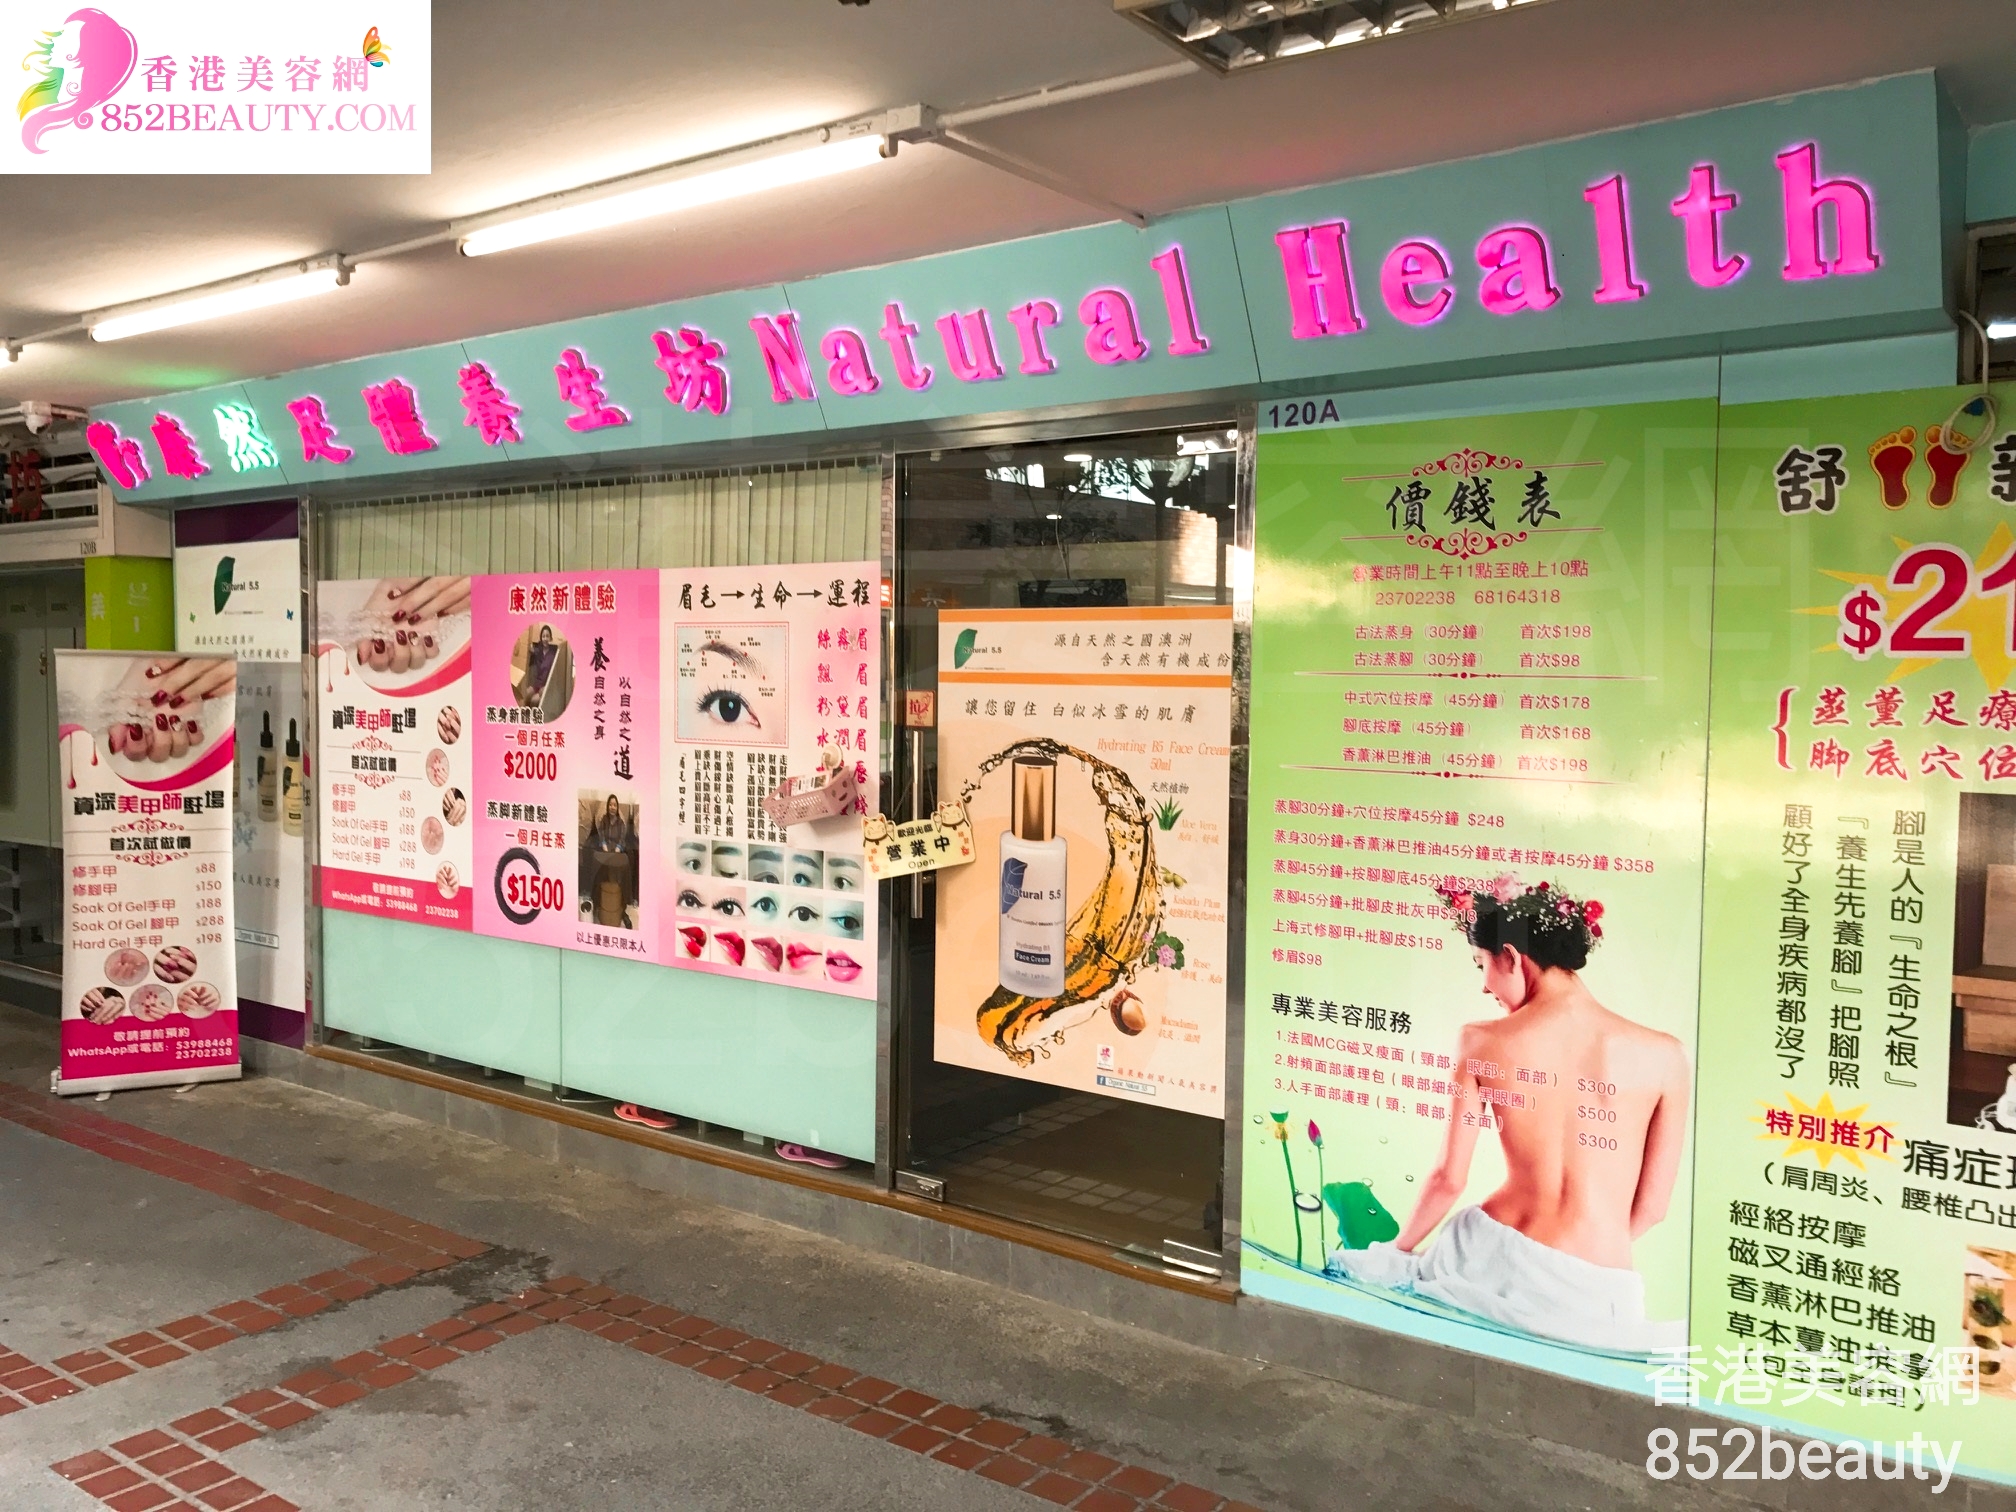 香港美容網 Hong Kong Beauty Salon 美容院 / 美容師: 康然足體養生坊